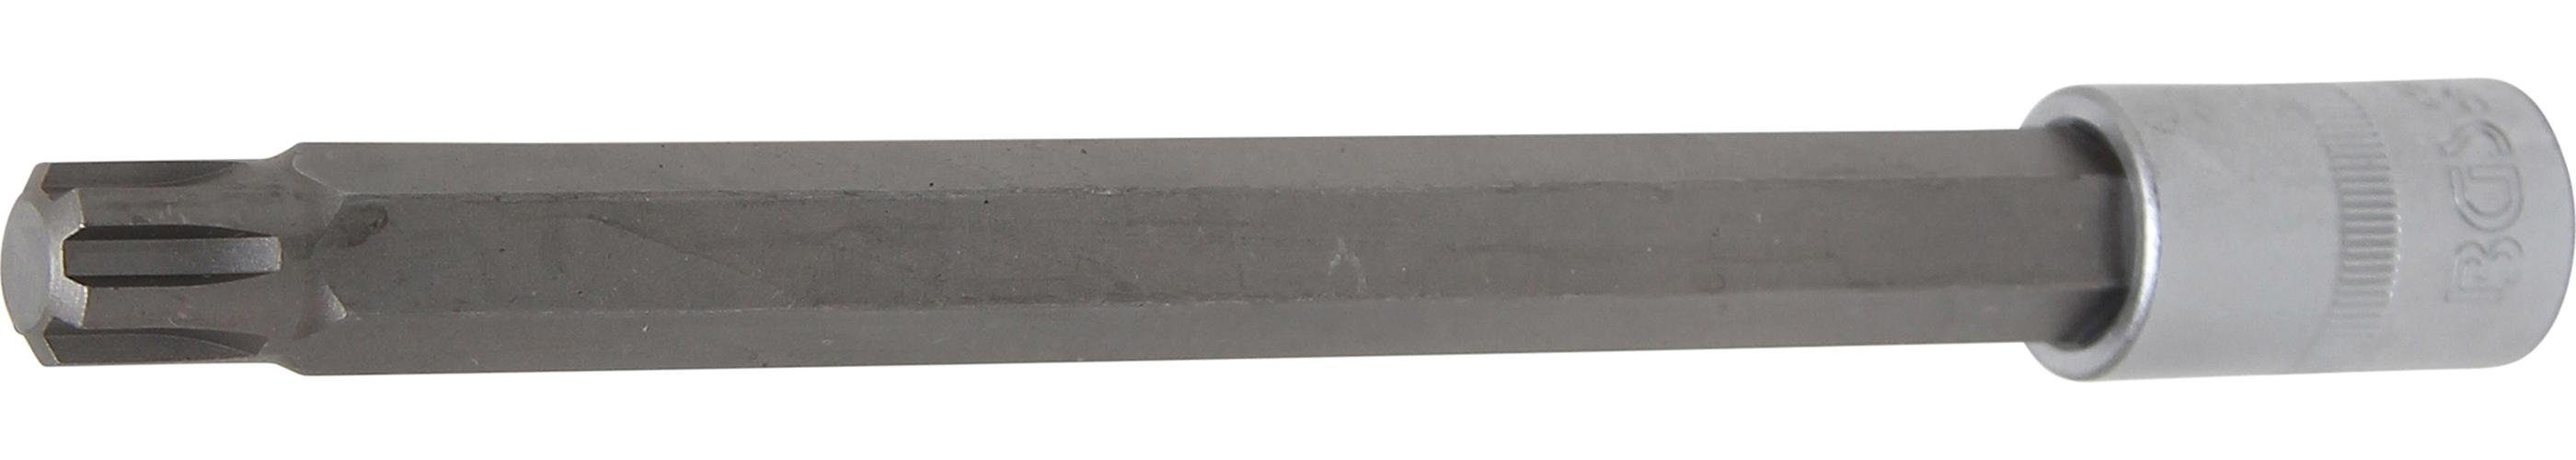 Länge 200 12,5 M14 Keil-Profil (für Bit-Schraubendreher (1/2), Innenvierkant BGS Antrieb Bit-Einsatz, mm, mm technic RIBE)